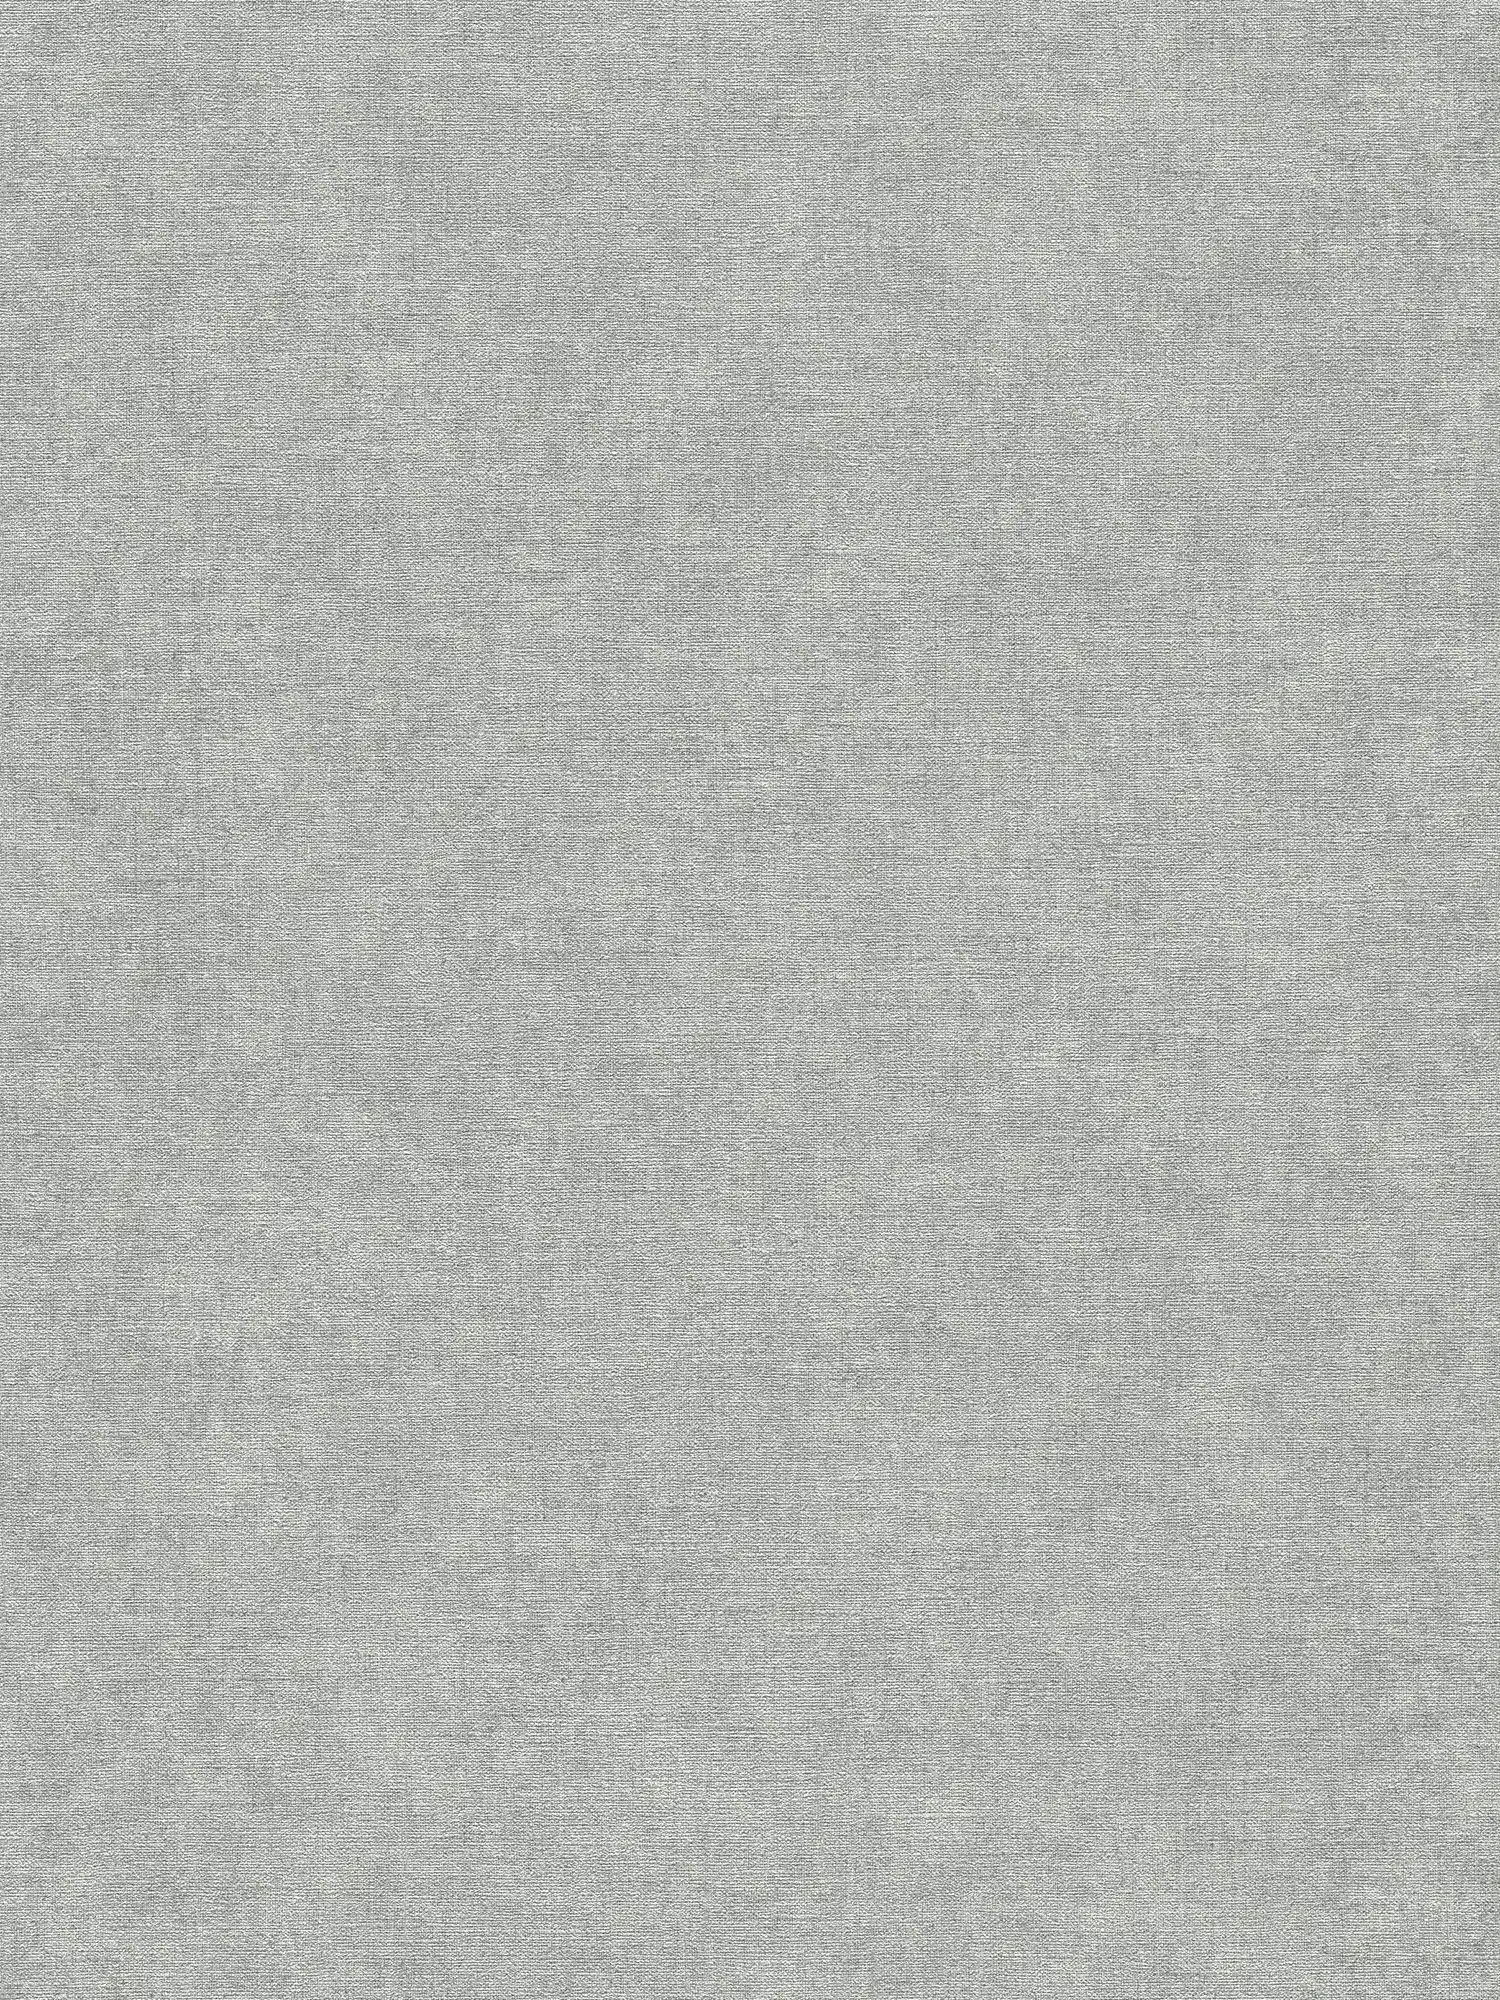 papier peint en papier intissé légèrement structuré, aspect crépi doux - gris, gris clair
